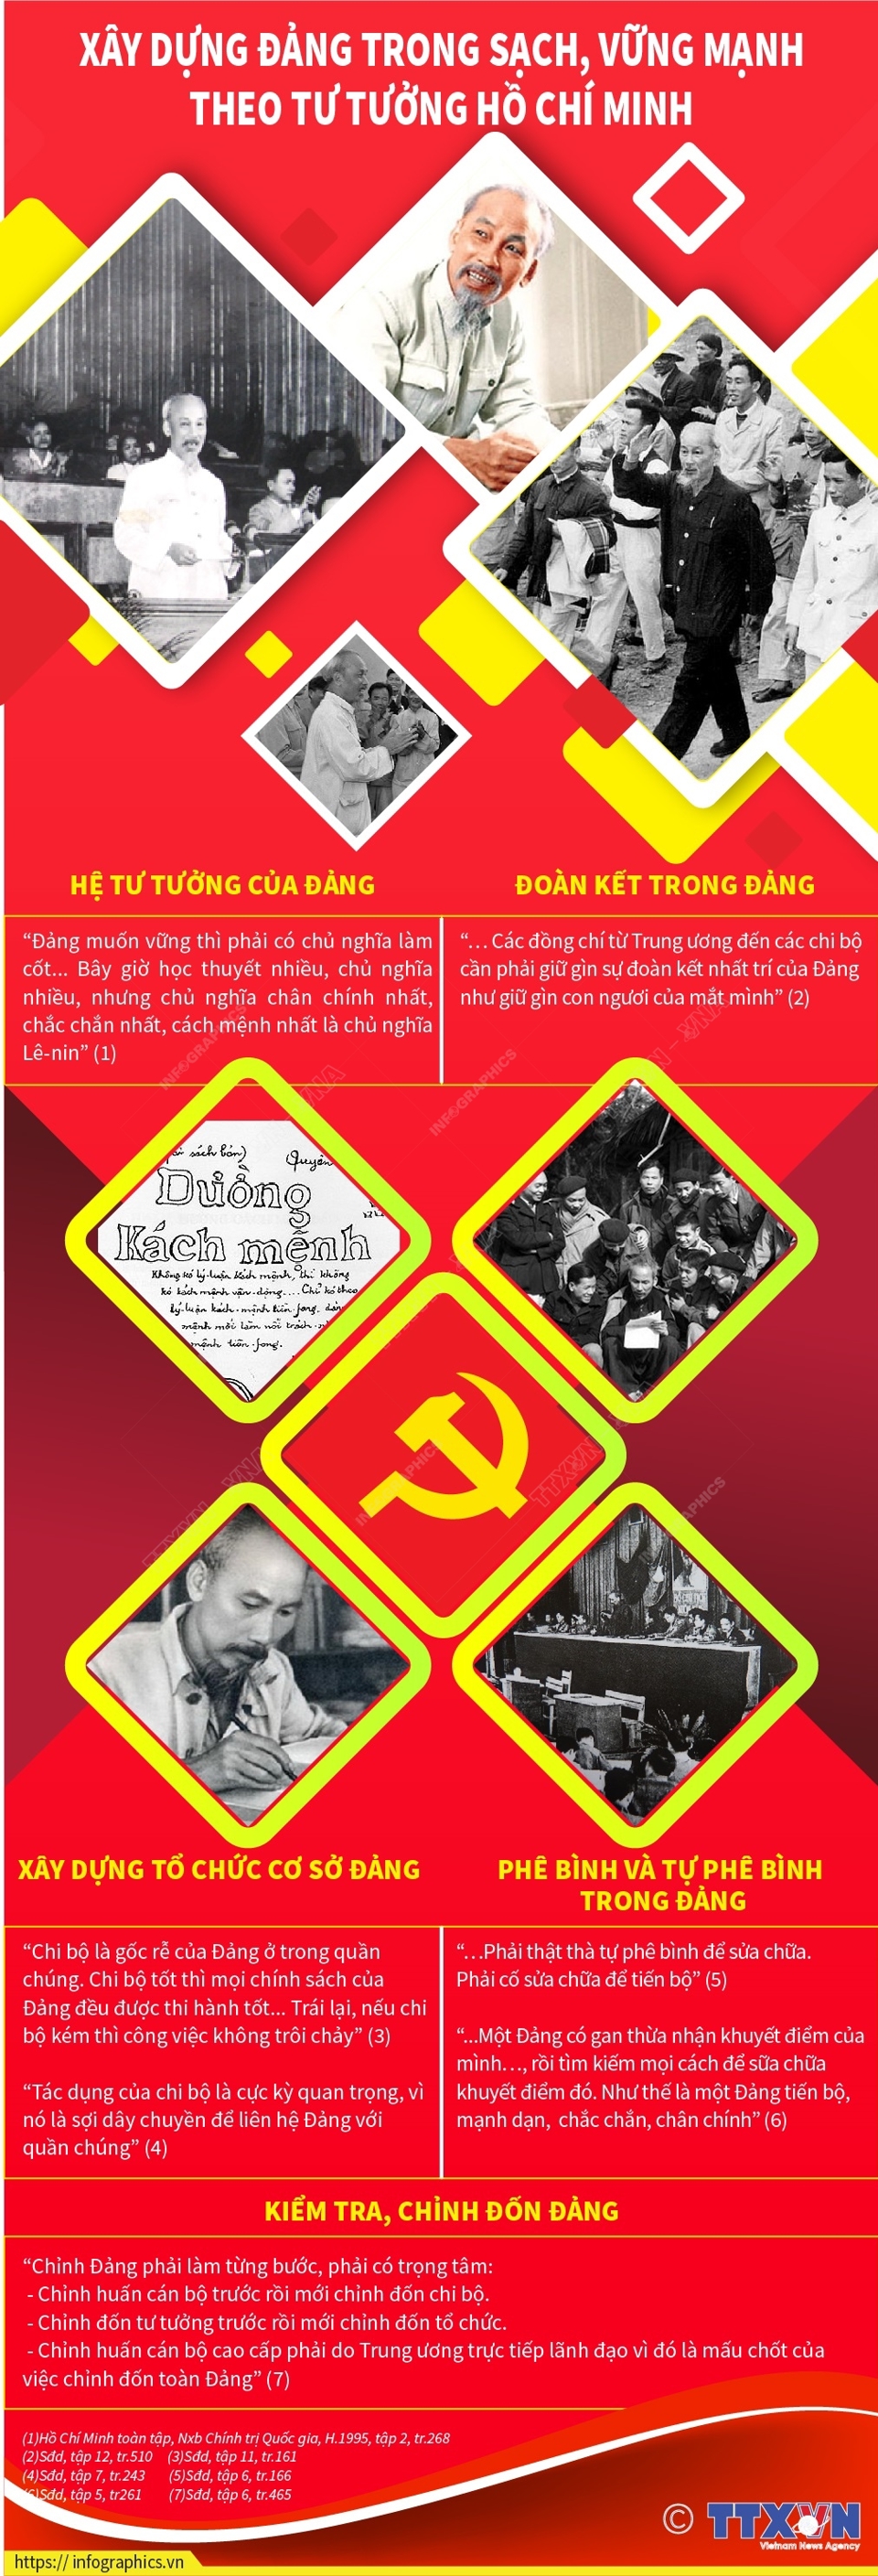 Xây dựng Đảng trong sạch, vững mạnh theo tư tưởng Hồ Chí Minh - Ảnh 1